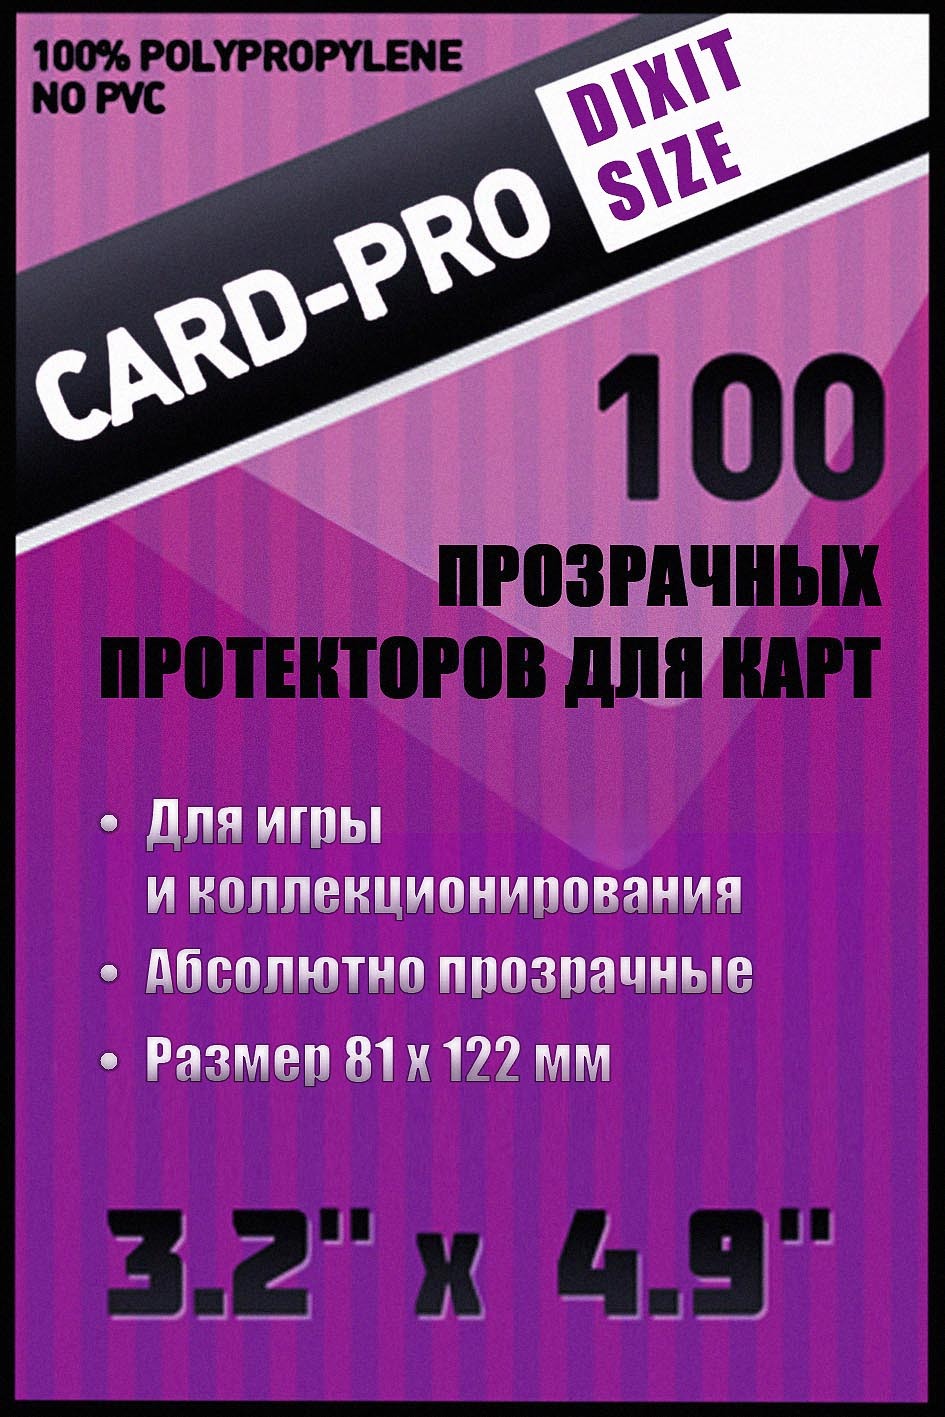  -  Card-Pro 81*122